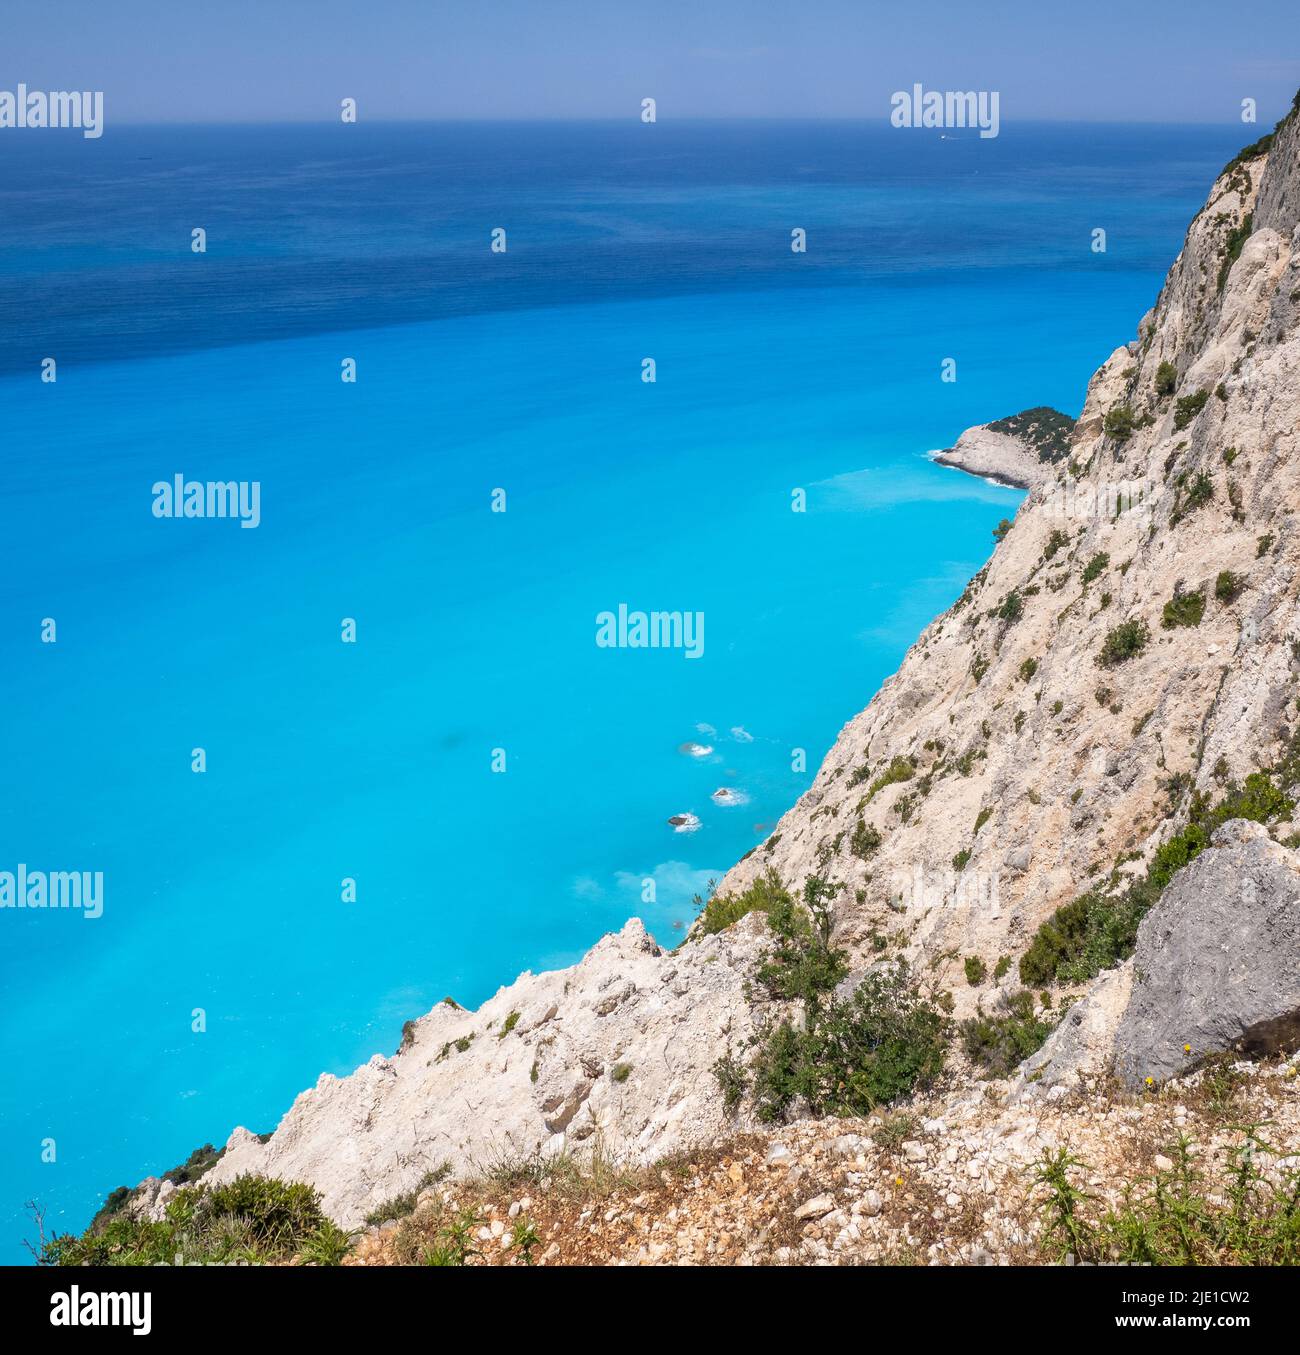 Leuchtendes türkisblaues Meer vor Kap Lefkata oder Doukato, verursacht durch Feinstaub-Gesteinsmehl durch Erosion der Kalksteinklippen - Lefkada Griechenland Stockfoto